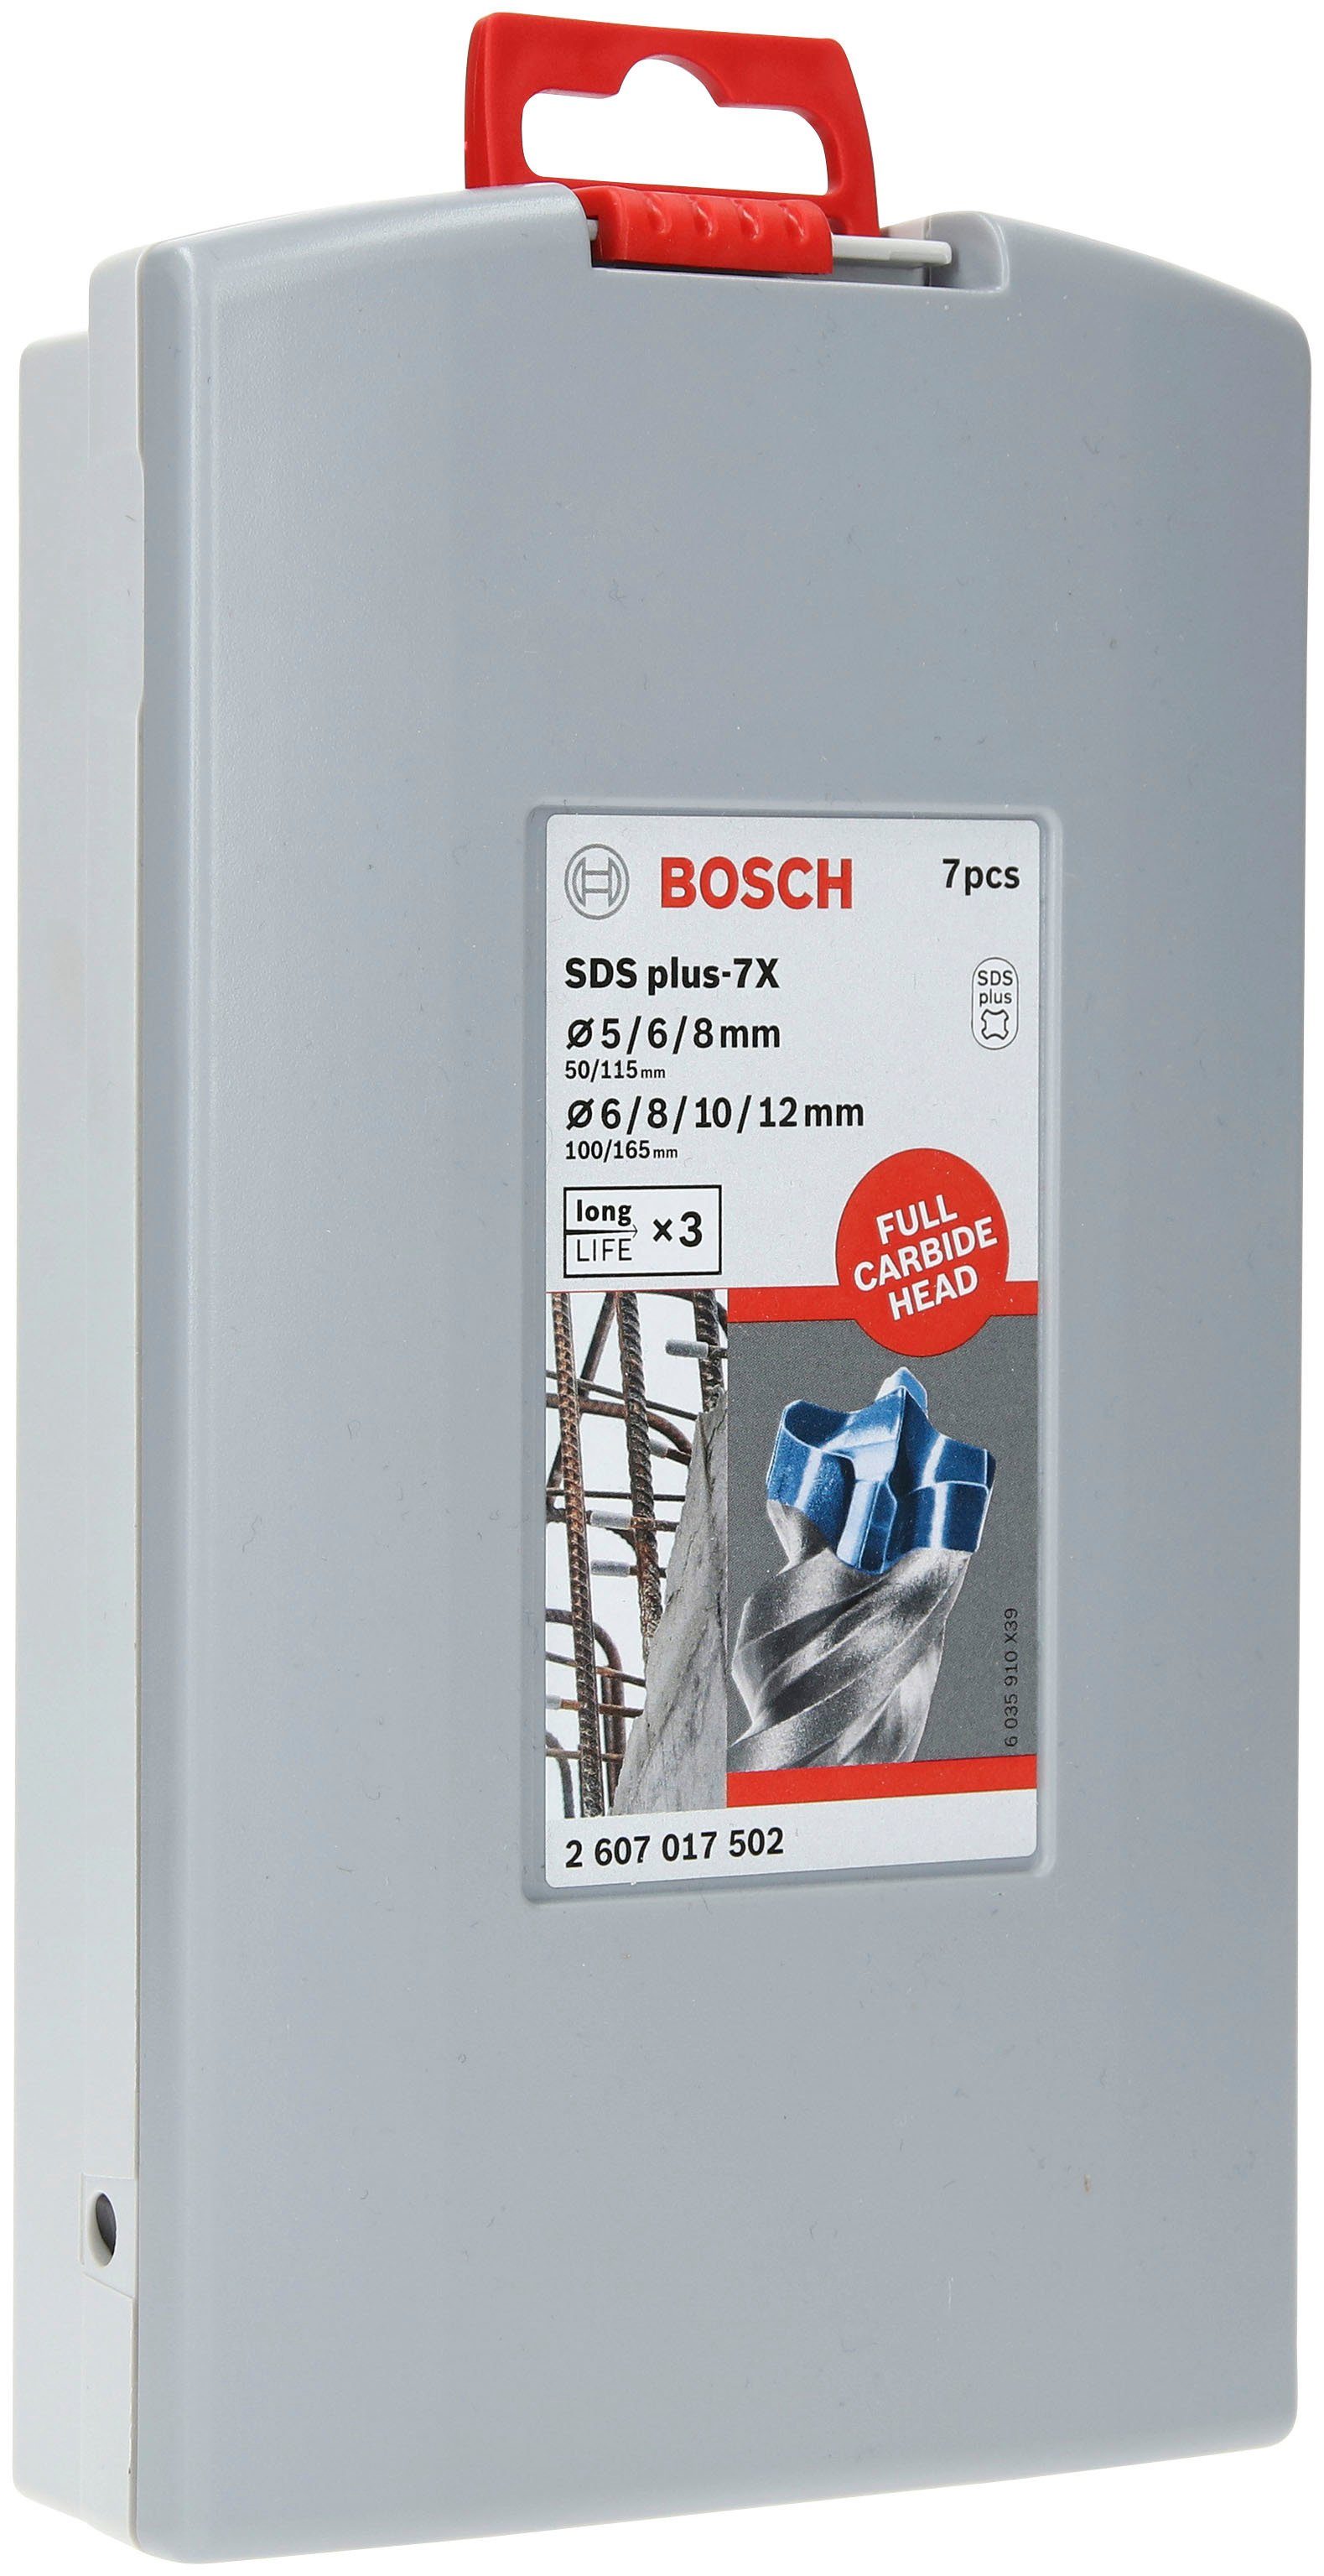 Bosch Professional Werkzeugset 7-teiliges SDS plus-7X Hammerbohrer-Set